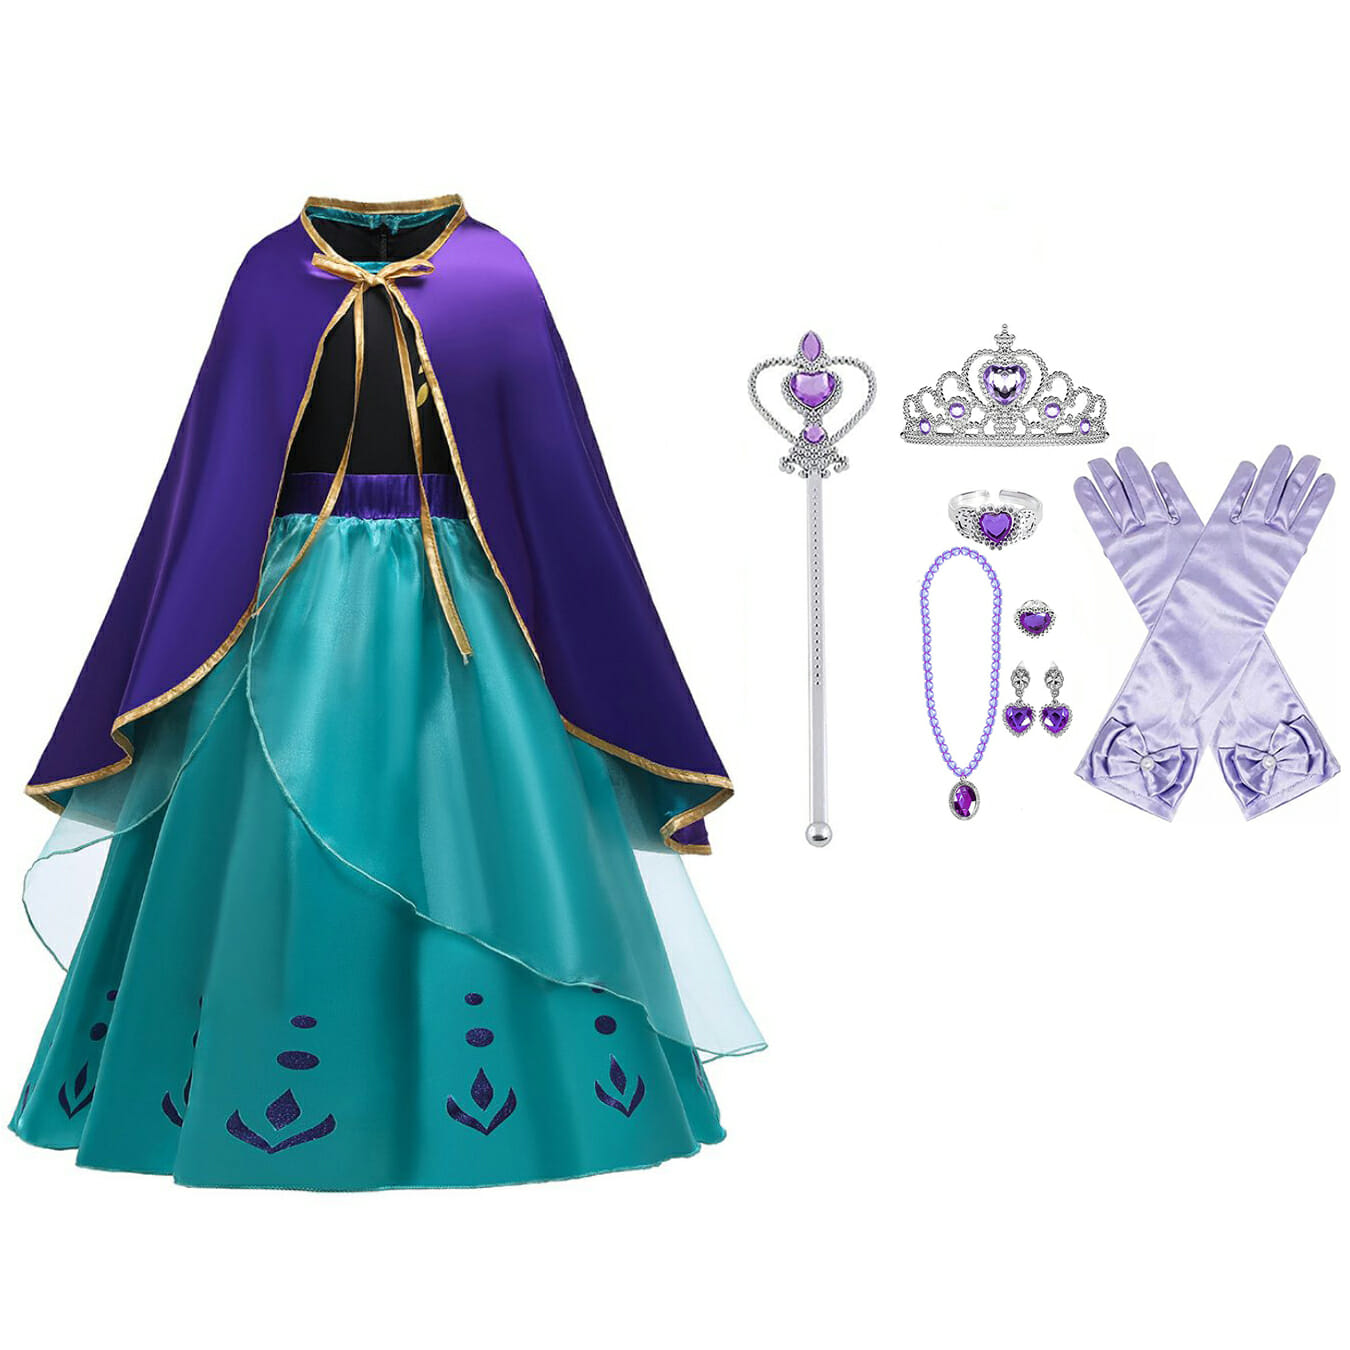 krans JEP compleet Frozen 2 Anna jurk paarse / turquoise cape + accessoires - Het Betere Merk